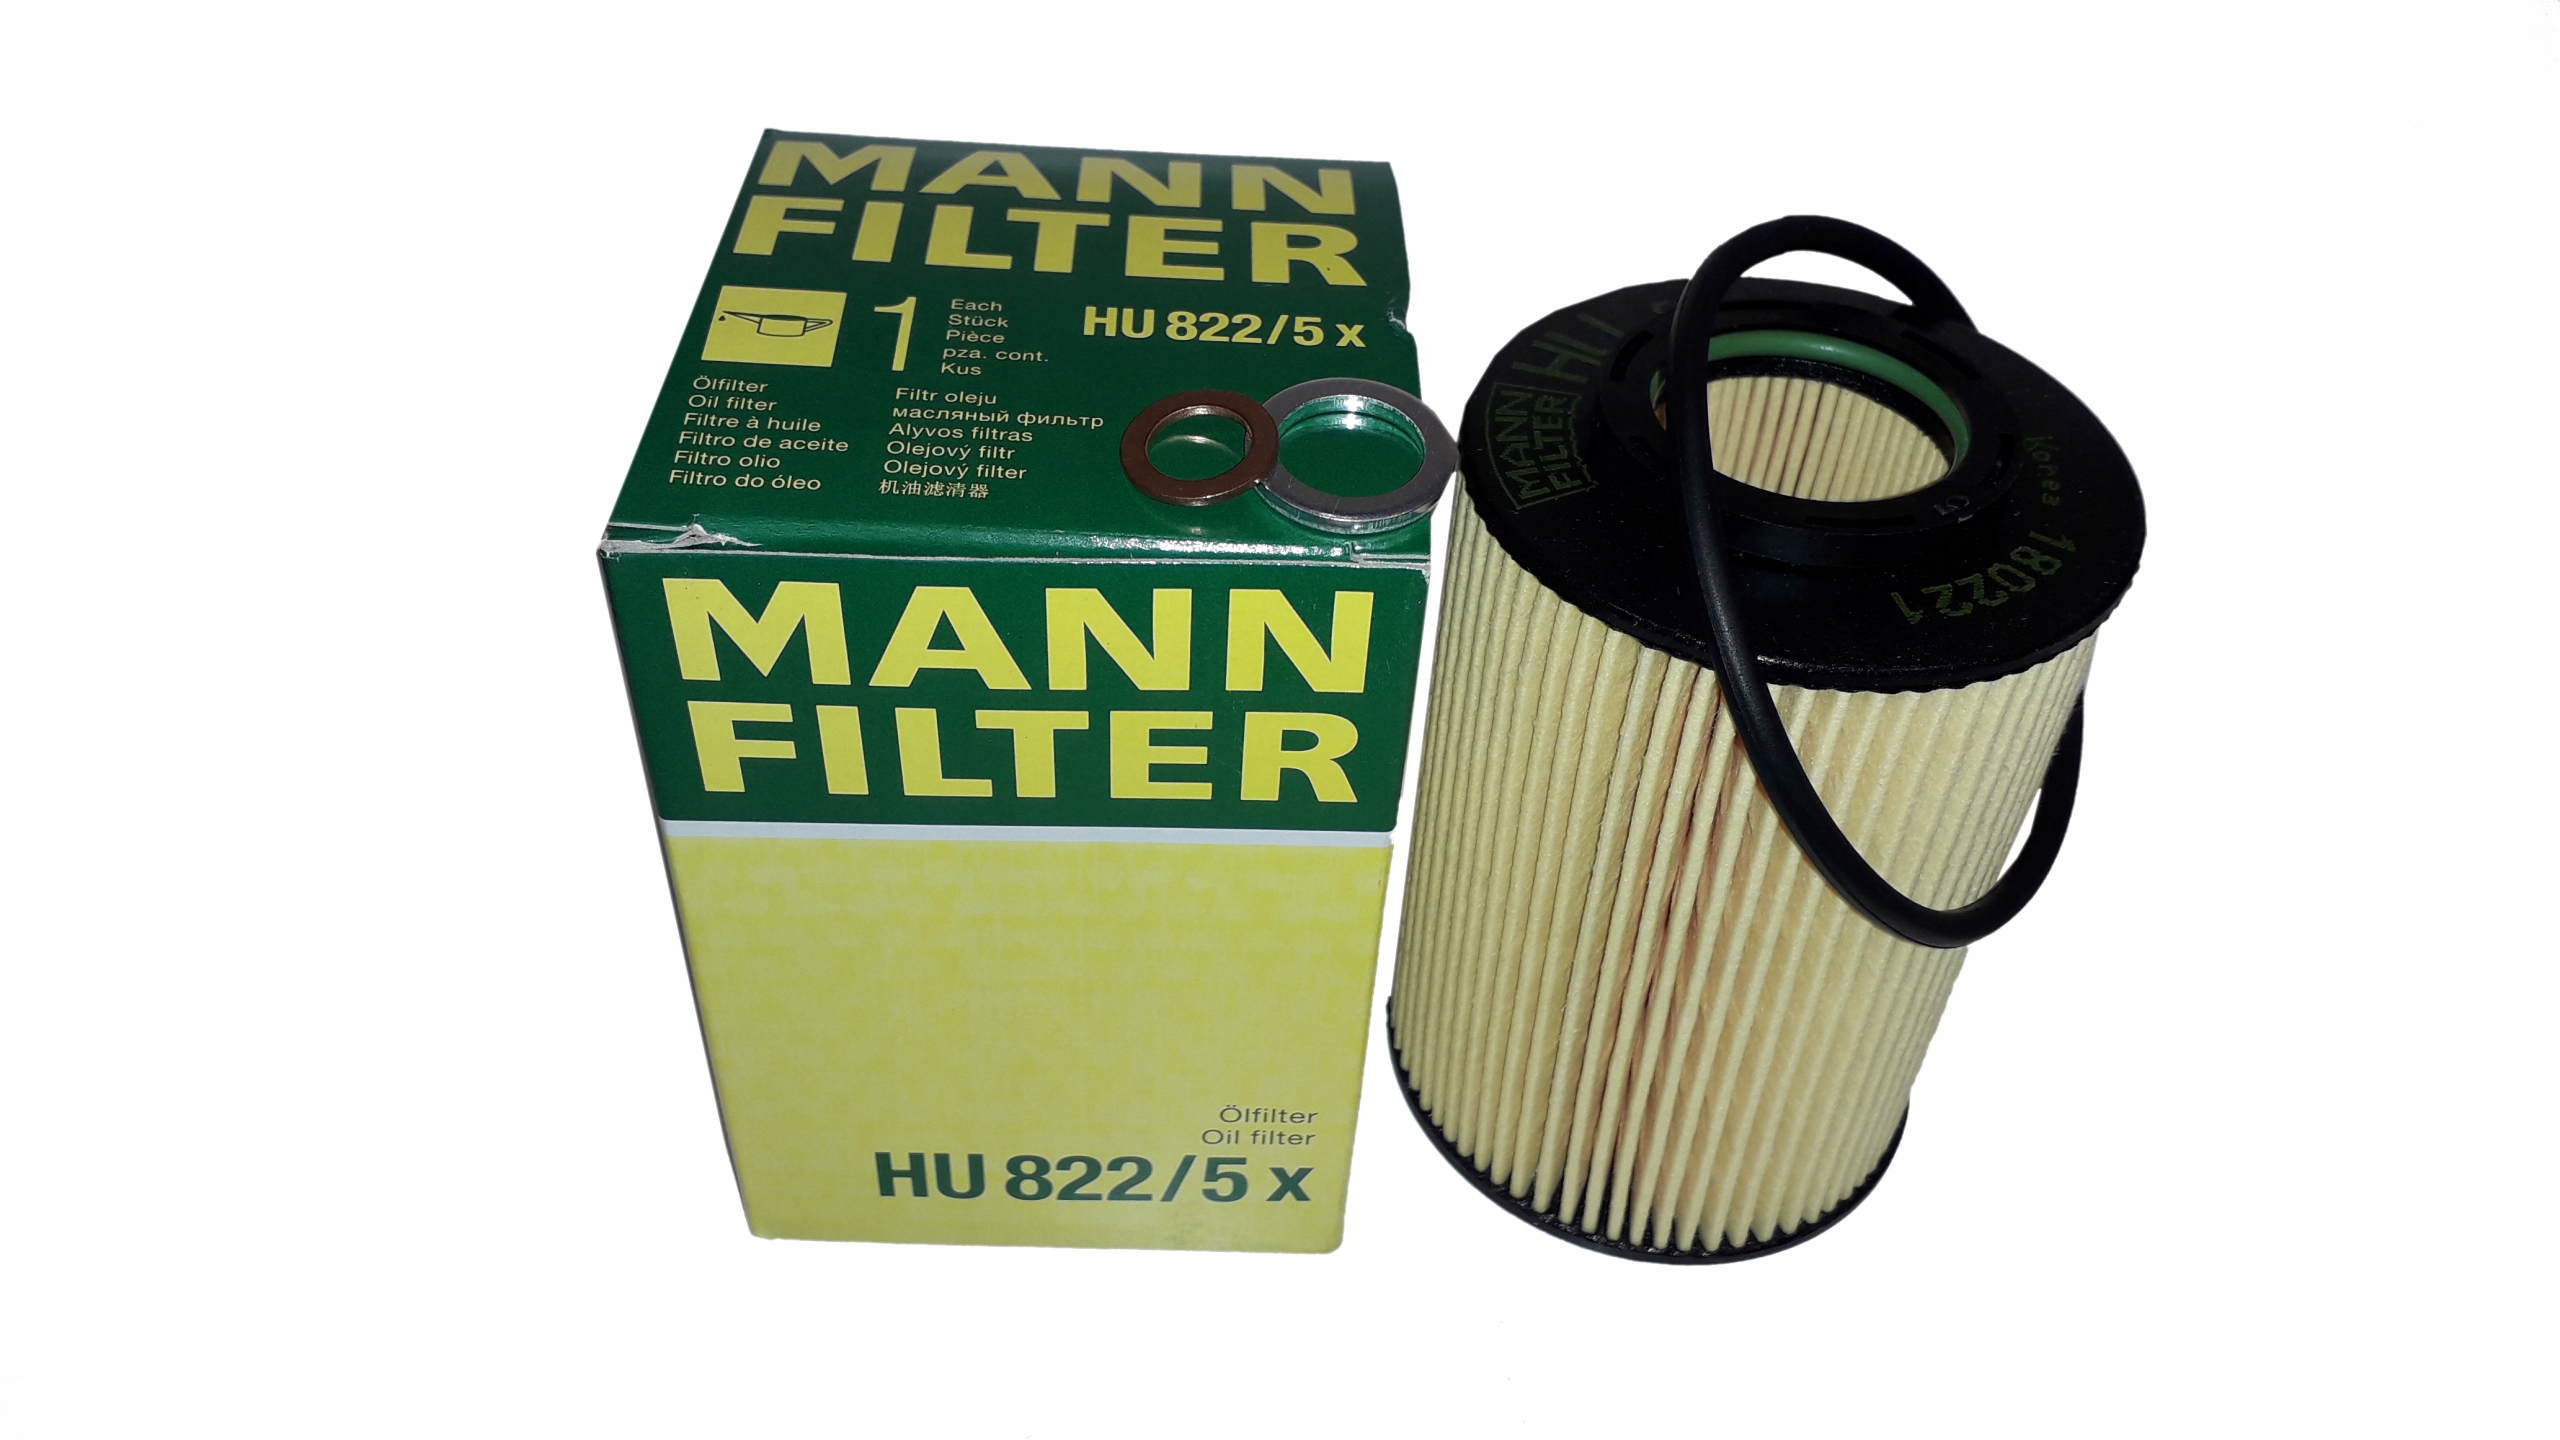 Киа к5 2.5 масло. Kia k5 2.5 масляный фильтр Mann-Filter. Хендай Санта Фе фильтр масляный Mann 2.0 \. Mann фильтр масляный hu822/5x. Kia Forte 2009 масляный фильтр Mann.